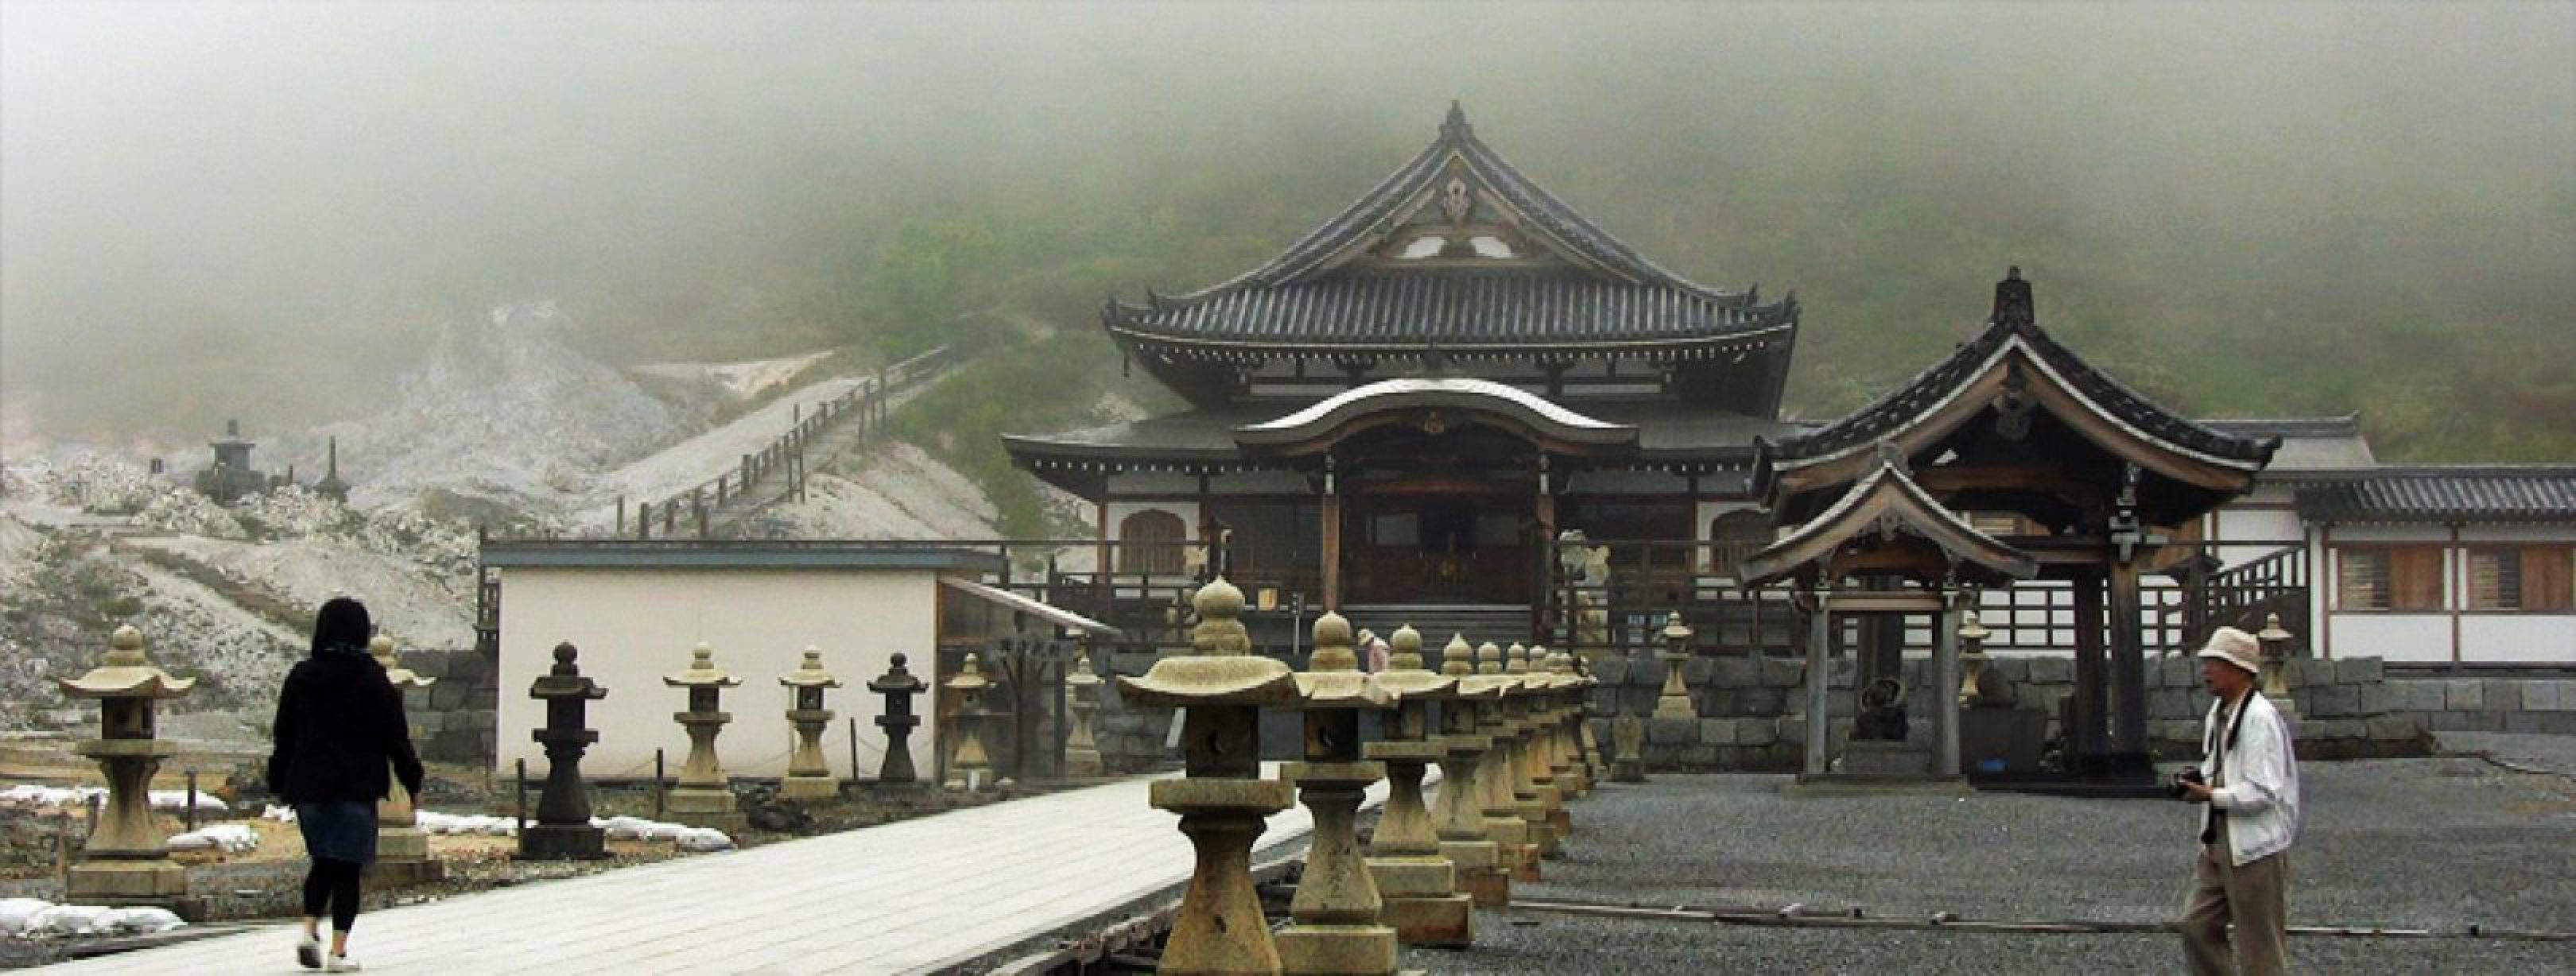 bodai-ji-tempel_header